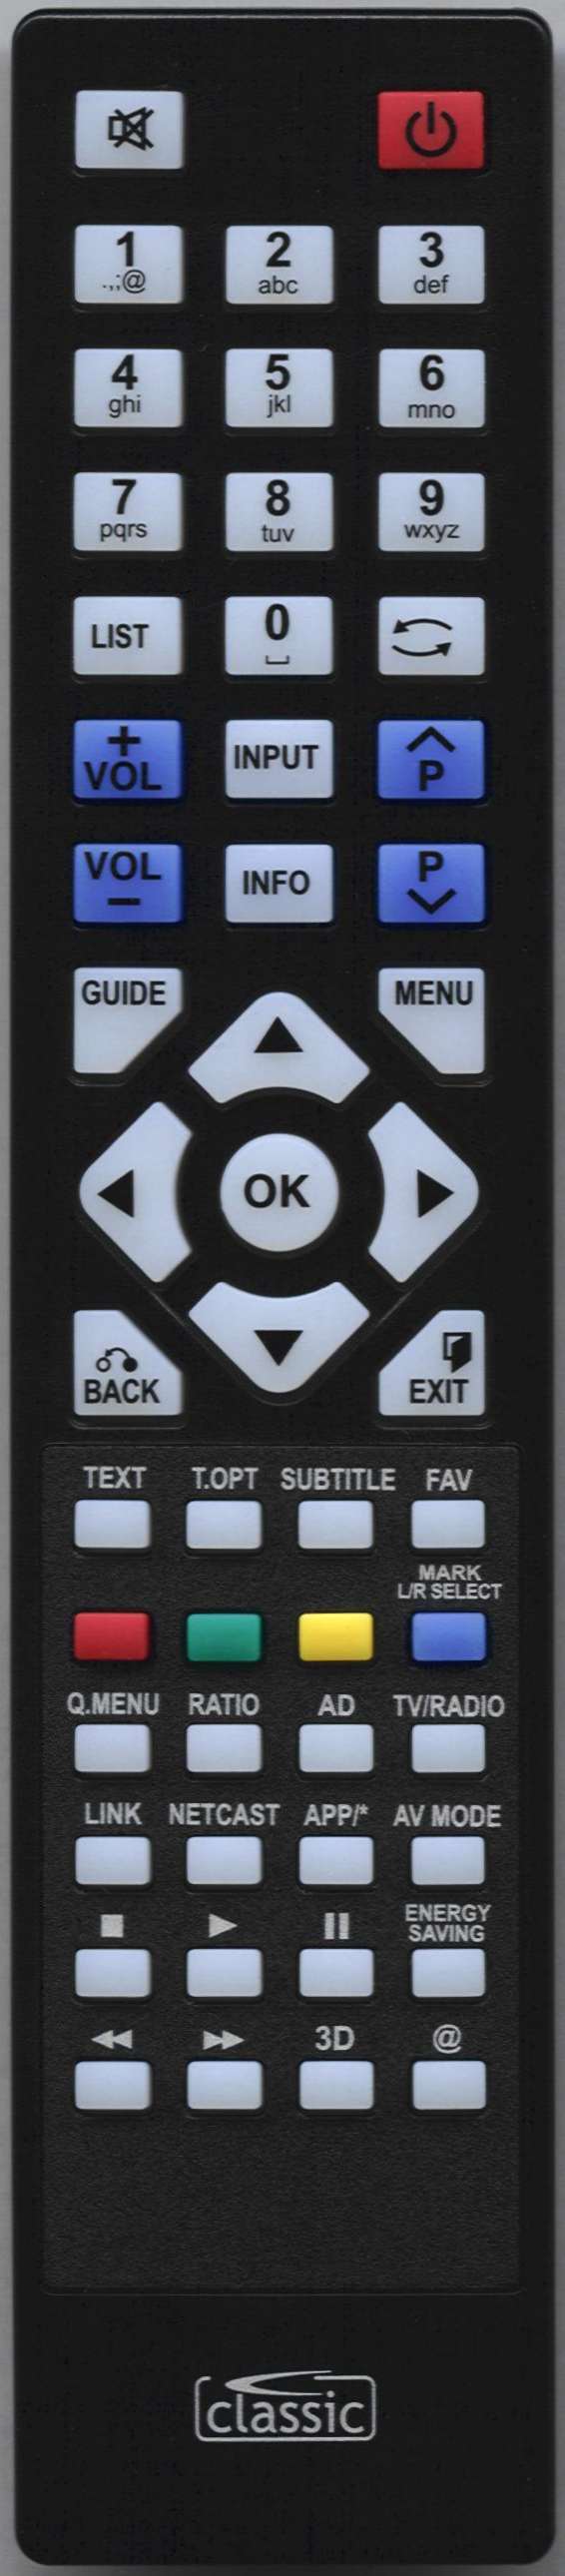 LG 19LE3310 Remote Control